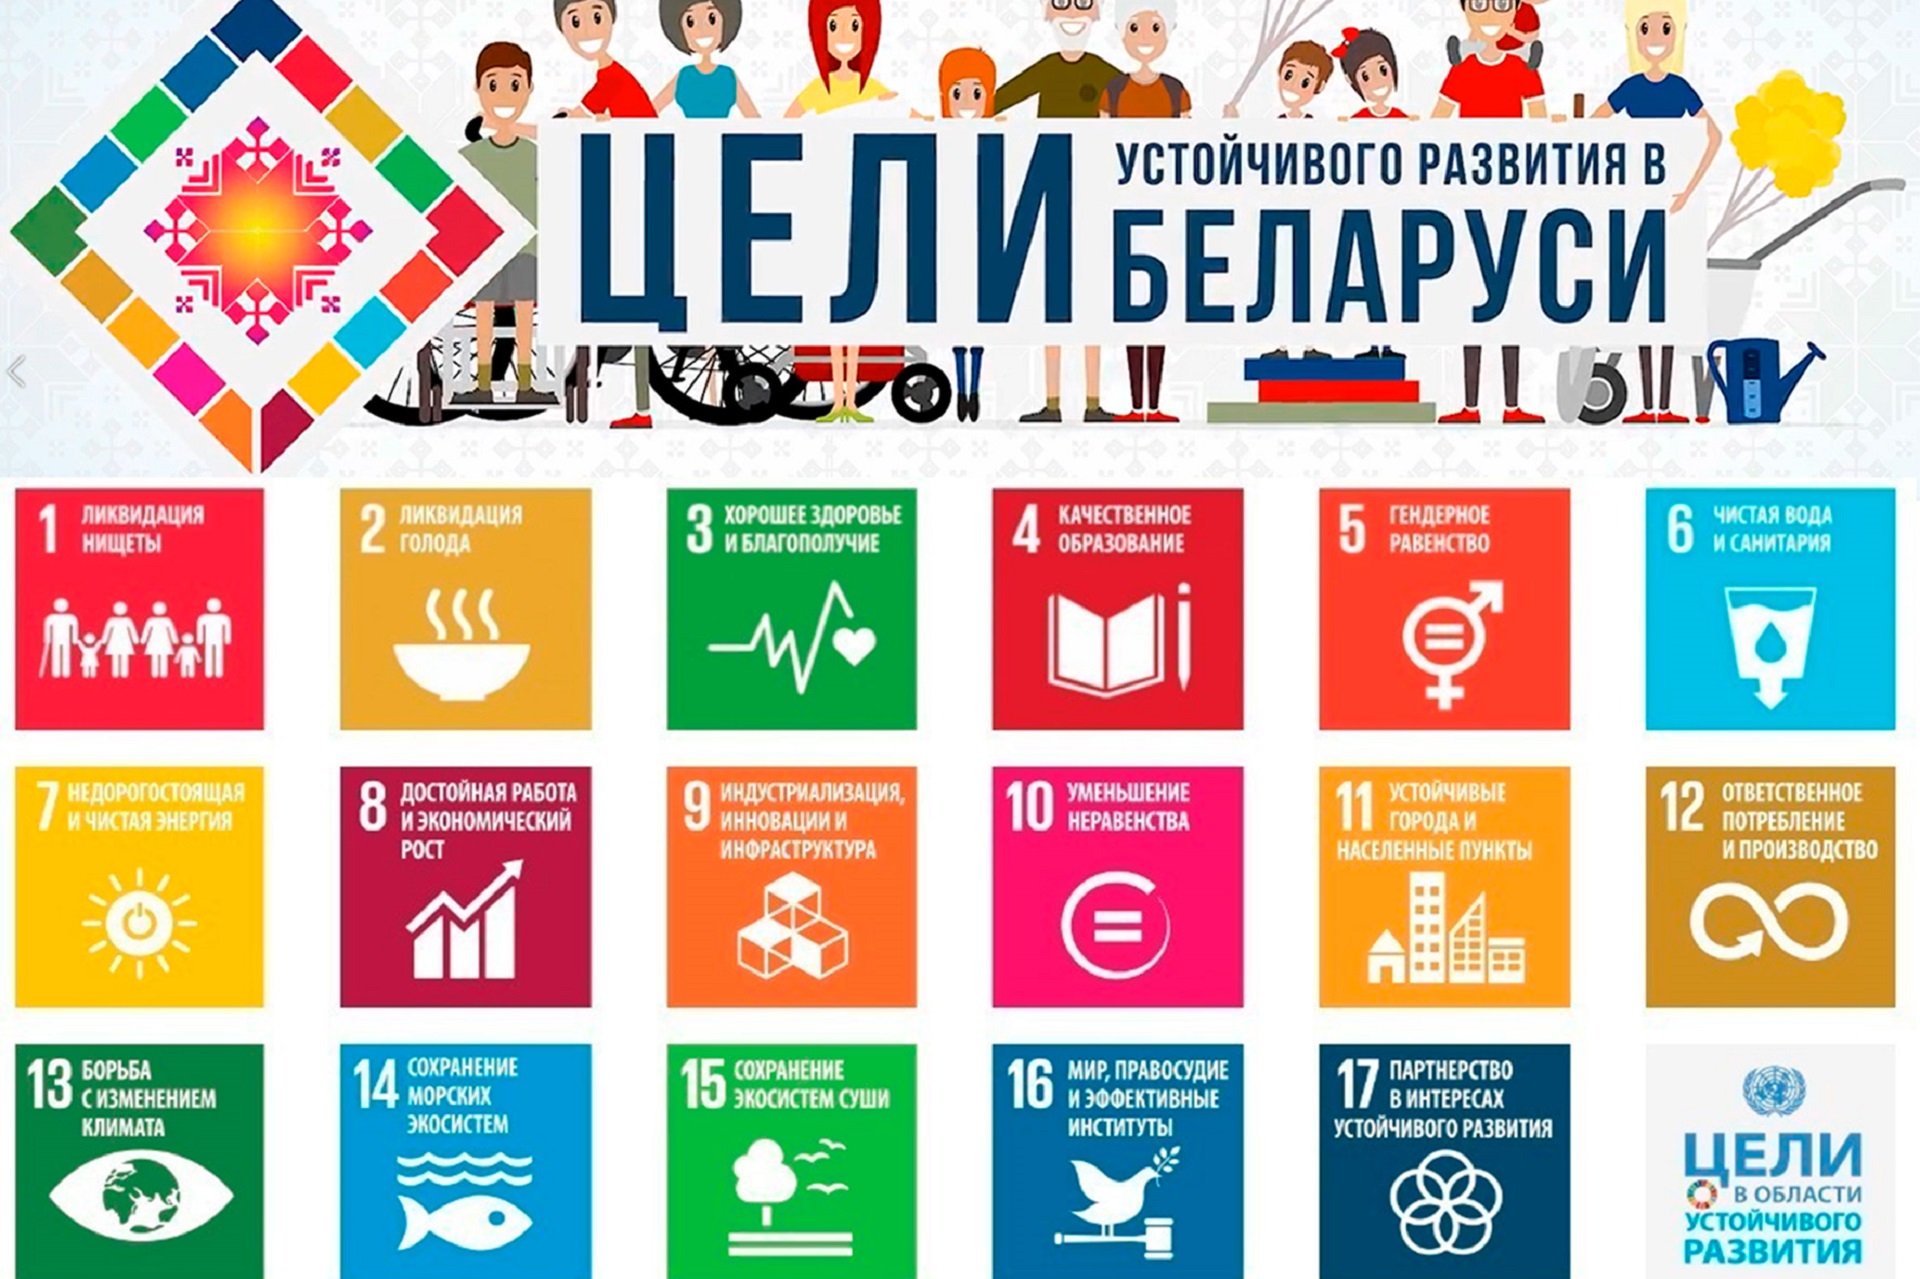 Определи цель устойчивого развития. 17 Целей устойчивого развития ООН. Цели устойчивого развития ООН 2015-2030. Цели устойчивого развития на период до 2030 года Беларусь. Цели устойчивого развития ООН до 2030.